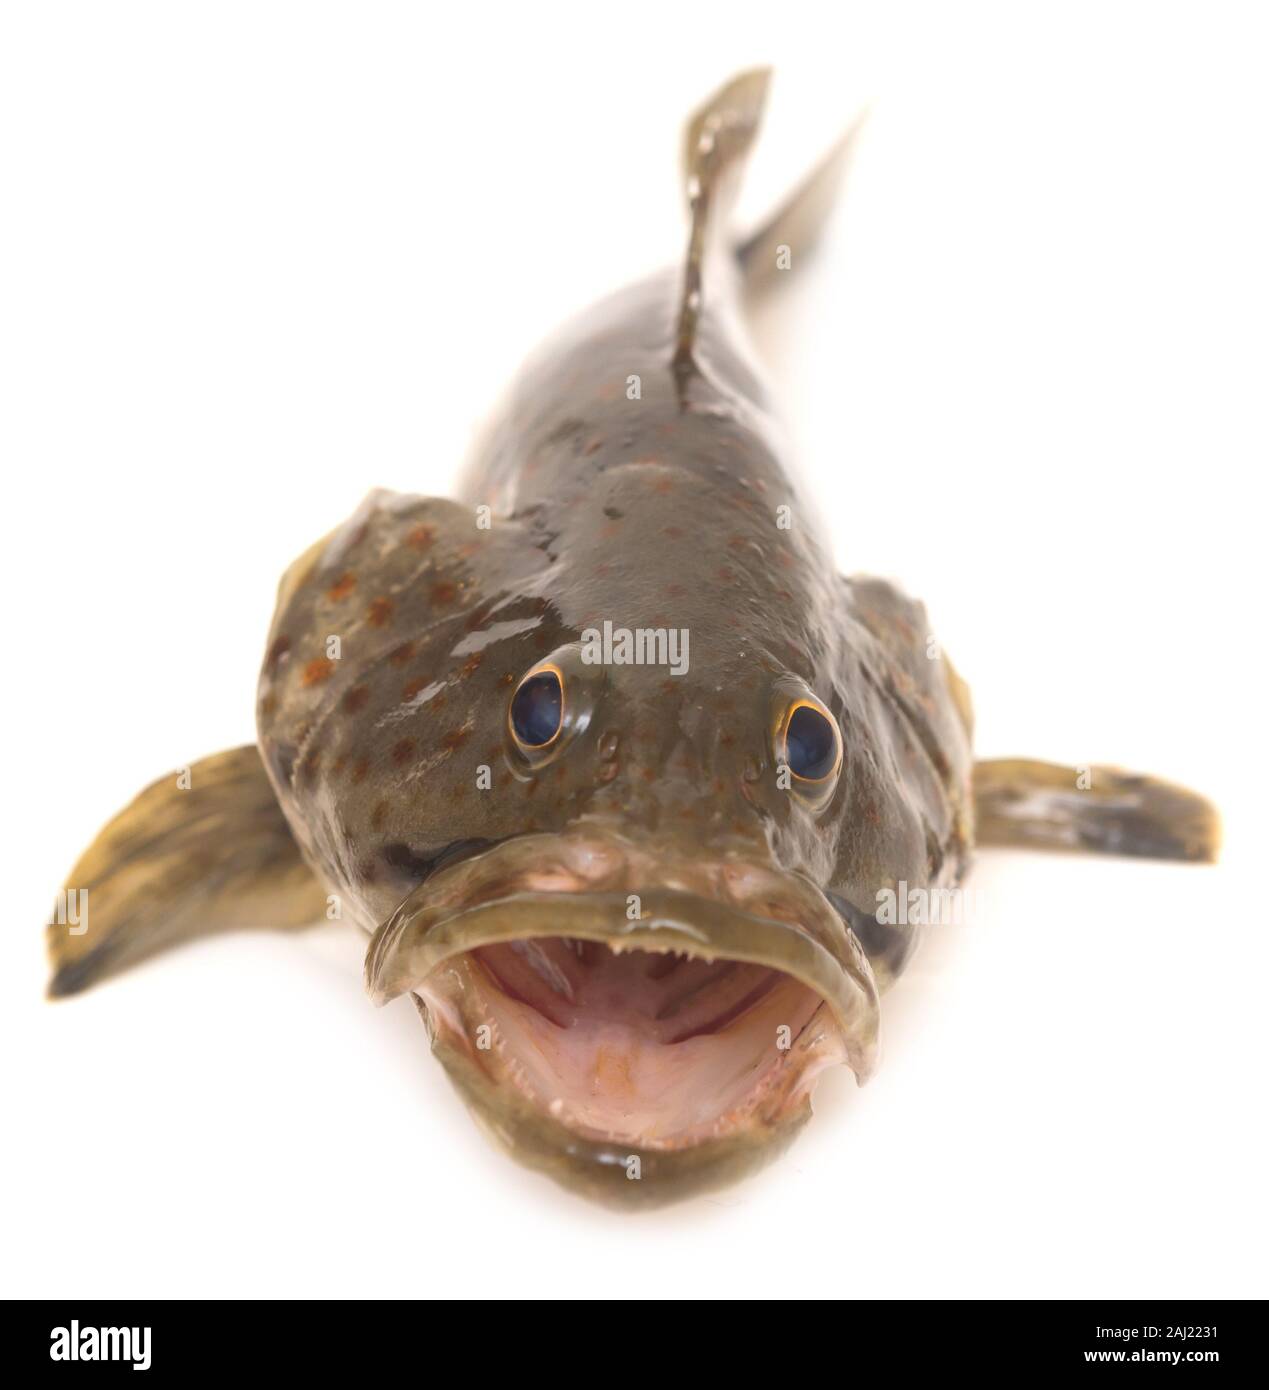 Fresh grouper isolated on white background Stock Photo